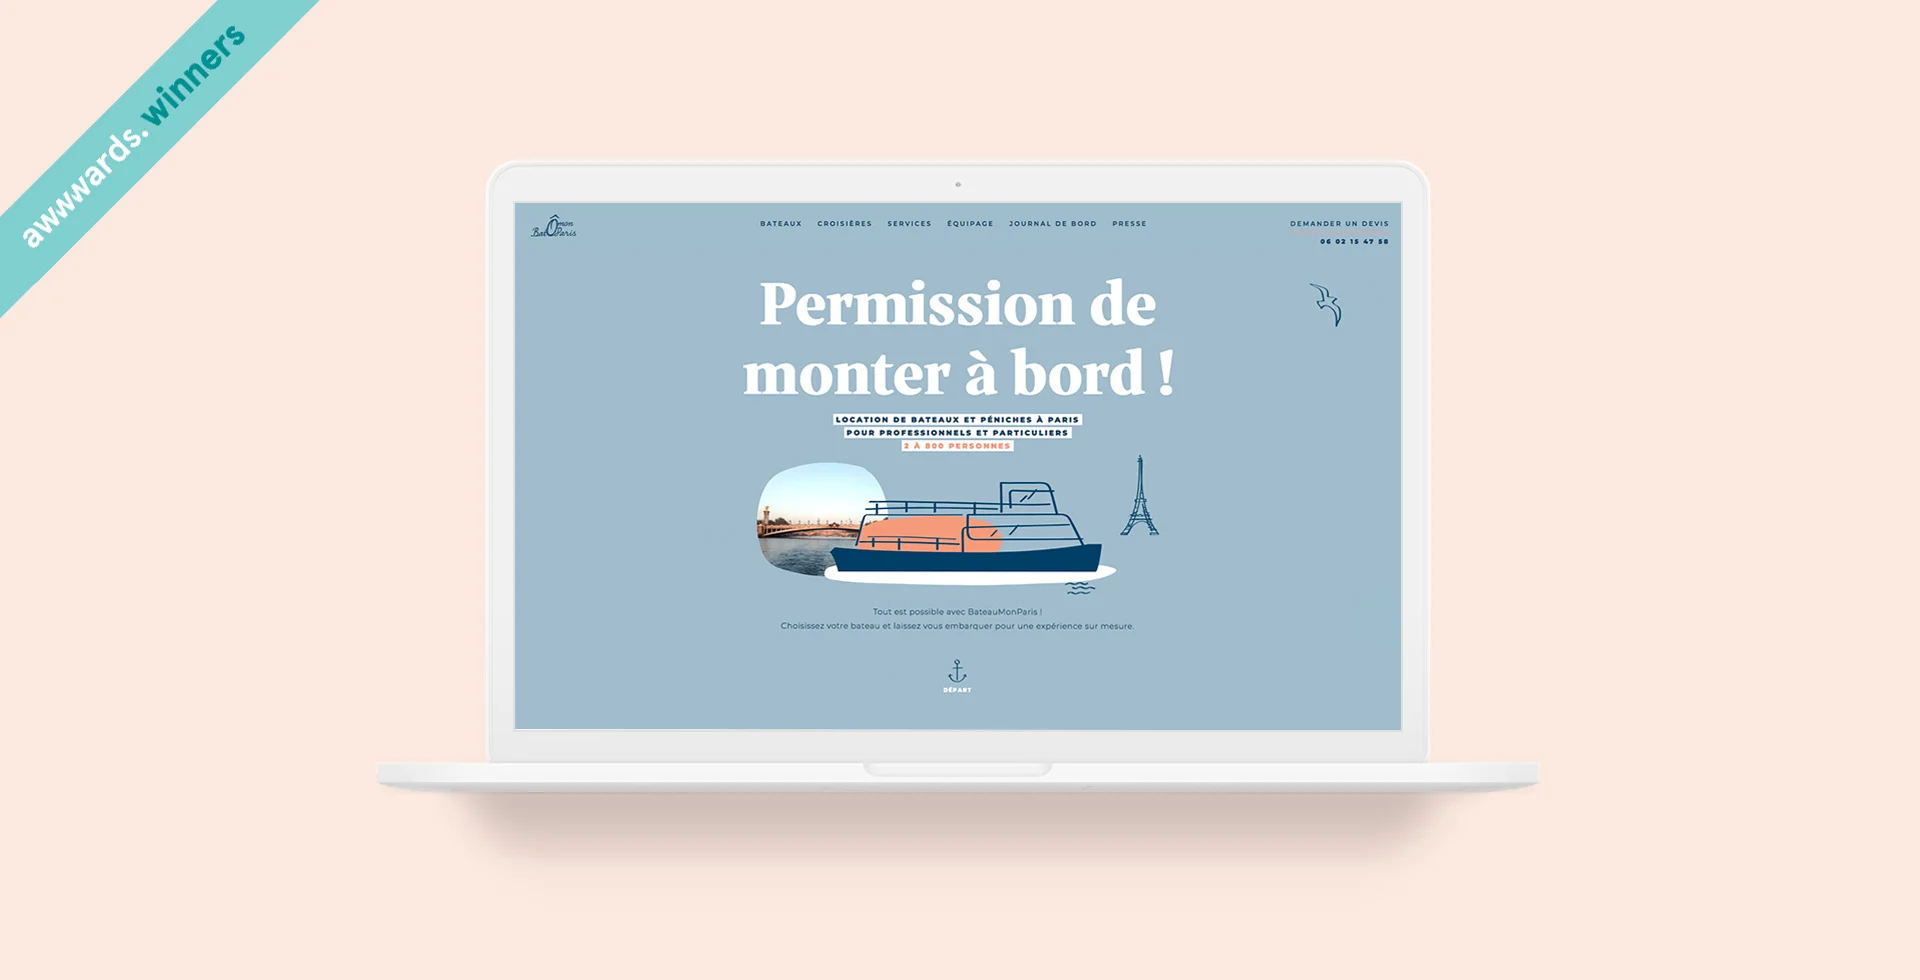 bateau-mon-paris-nouveau-site-web-vitrine-creation-agence-communication-buzznative-orleans-paris